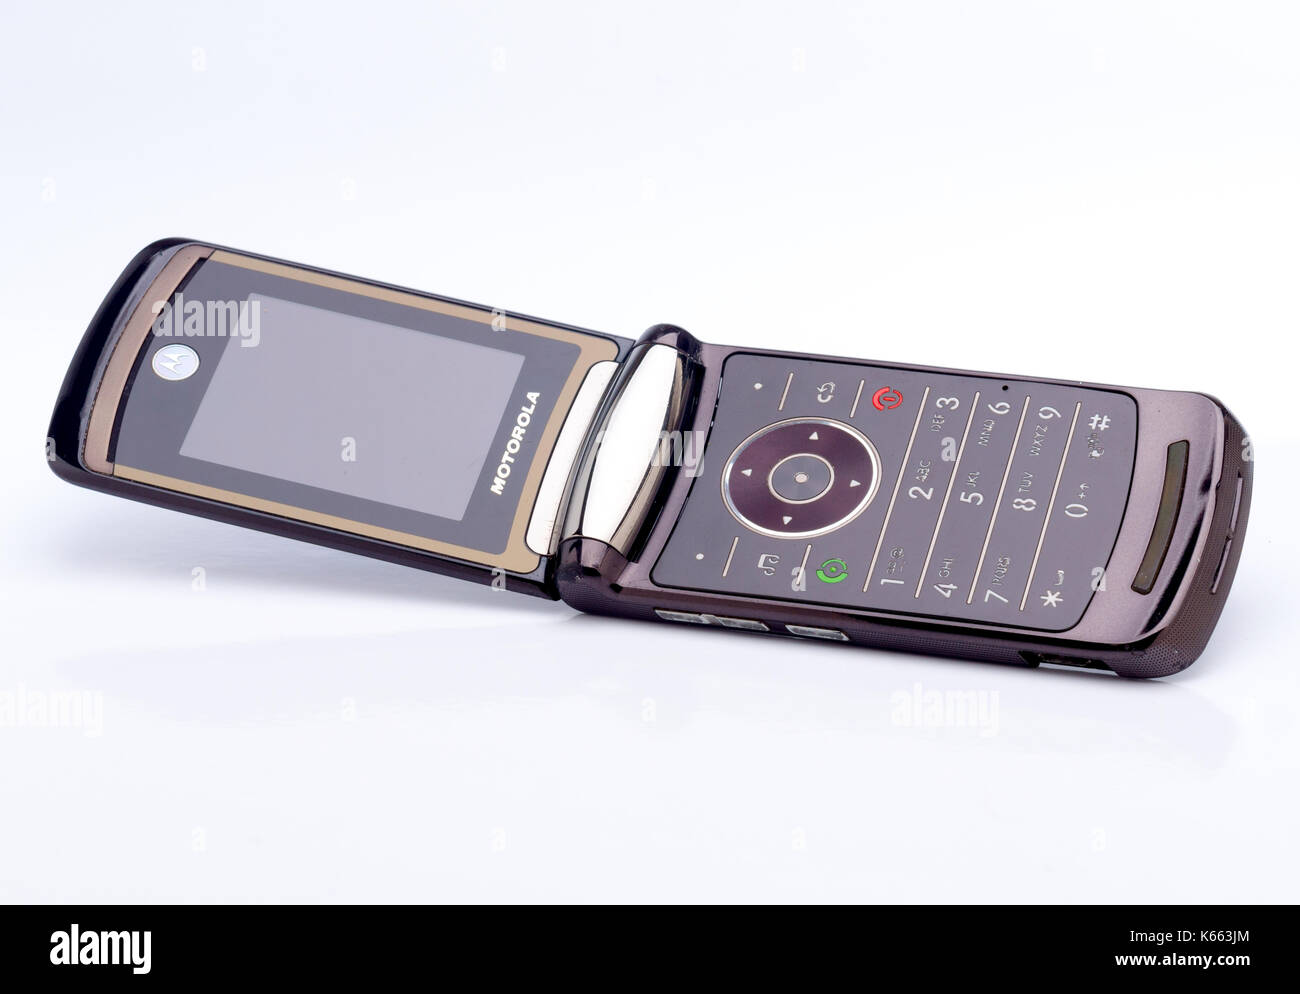 Motorola Razr 2 V9 pour la première fois en 2007, Motorola est une entreprise américaine fondée en 1928 Banque D'Images